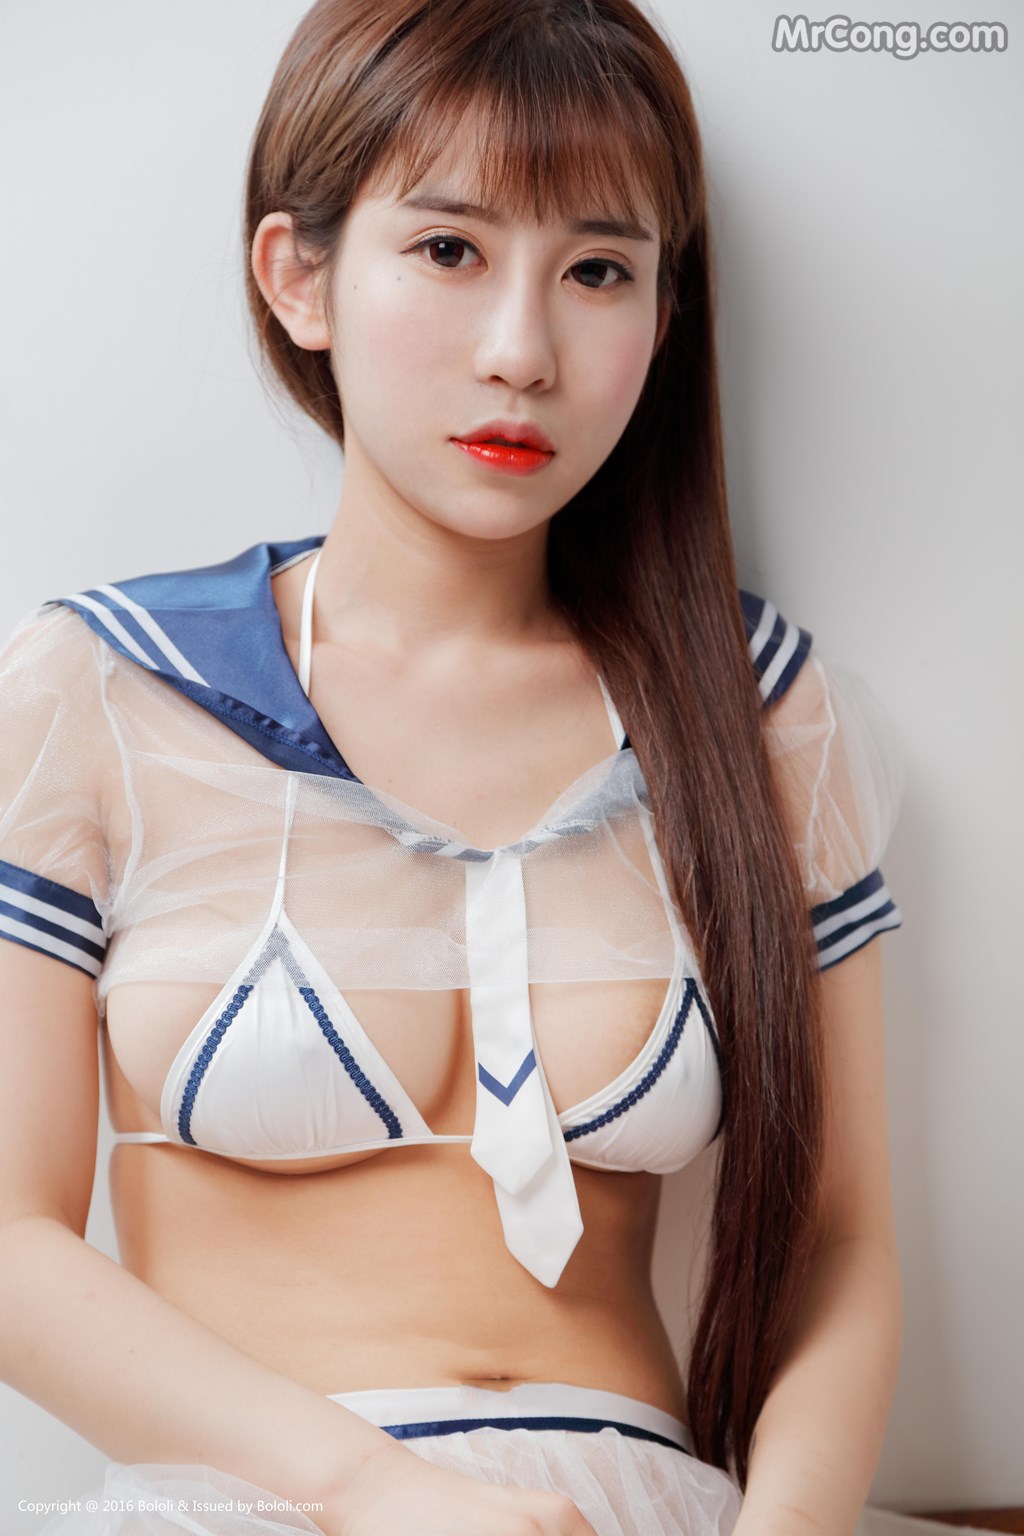 BoLoli 2017-07-16 Vol.084: Model Luo Li You You Jiang (萝莉 悠悠 酱) (40 photos)